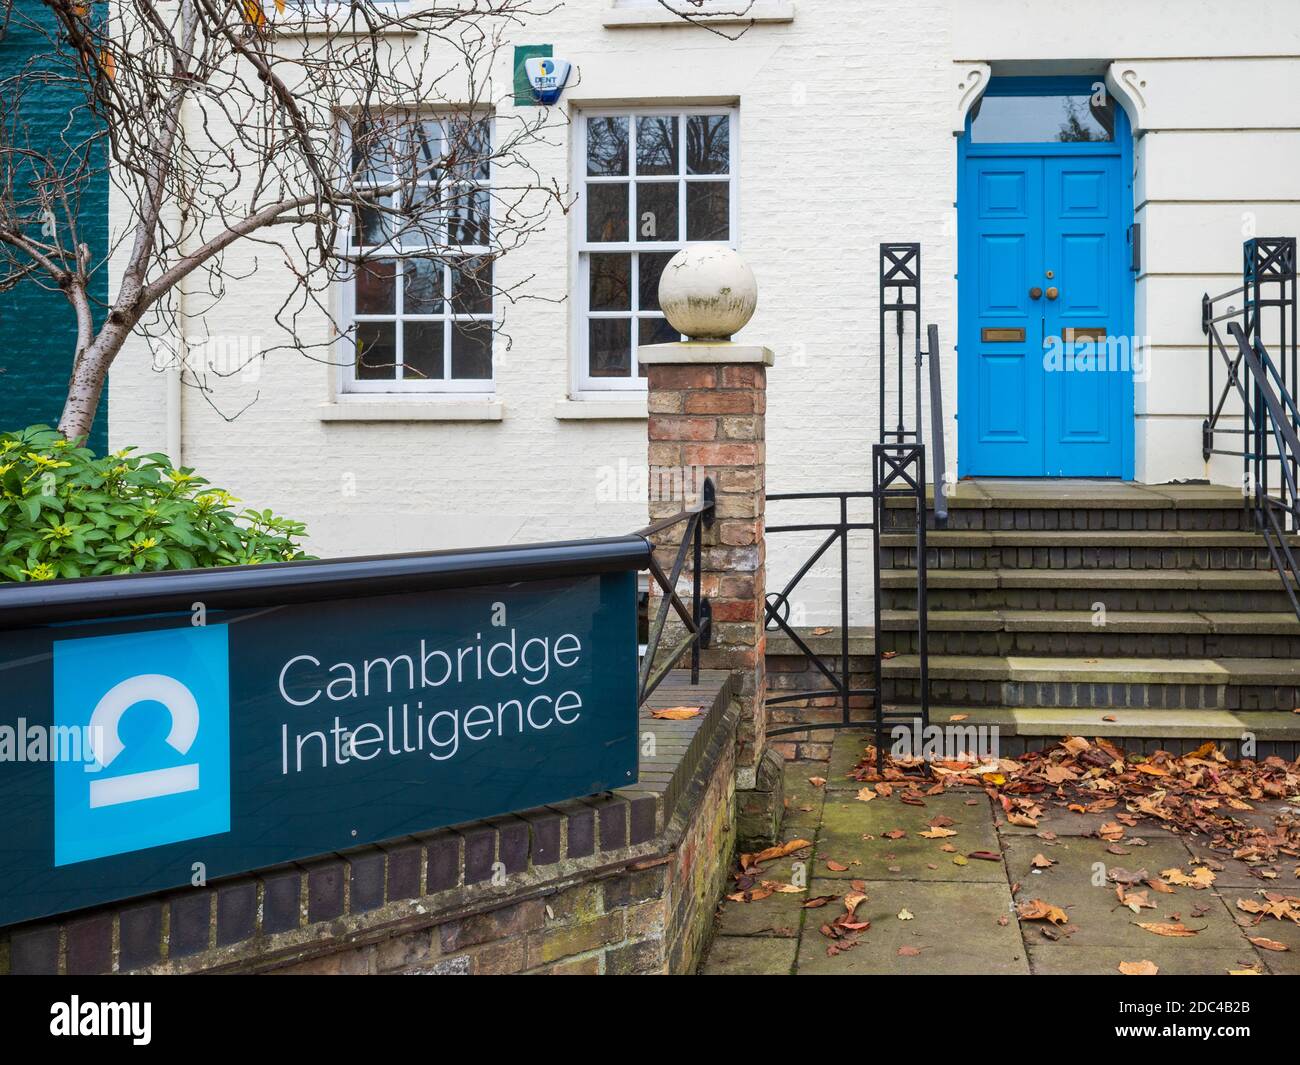 Cambridge Intelligence - visualisation de données d'une société basée à Cambridge, au Royaume-Uni, fondée en 2011, à aider les entreprises à comprendre leurs données connecté Banque D'Images